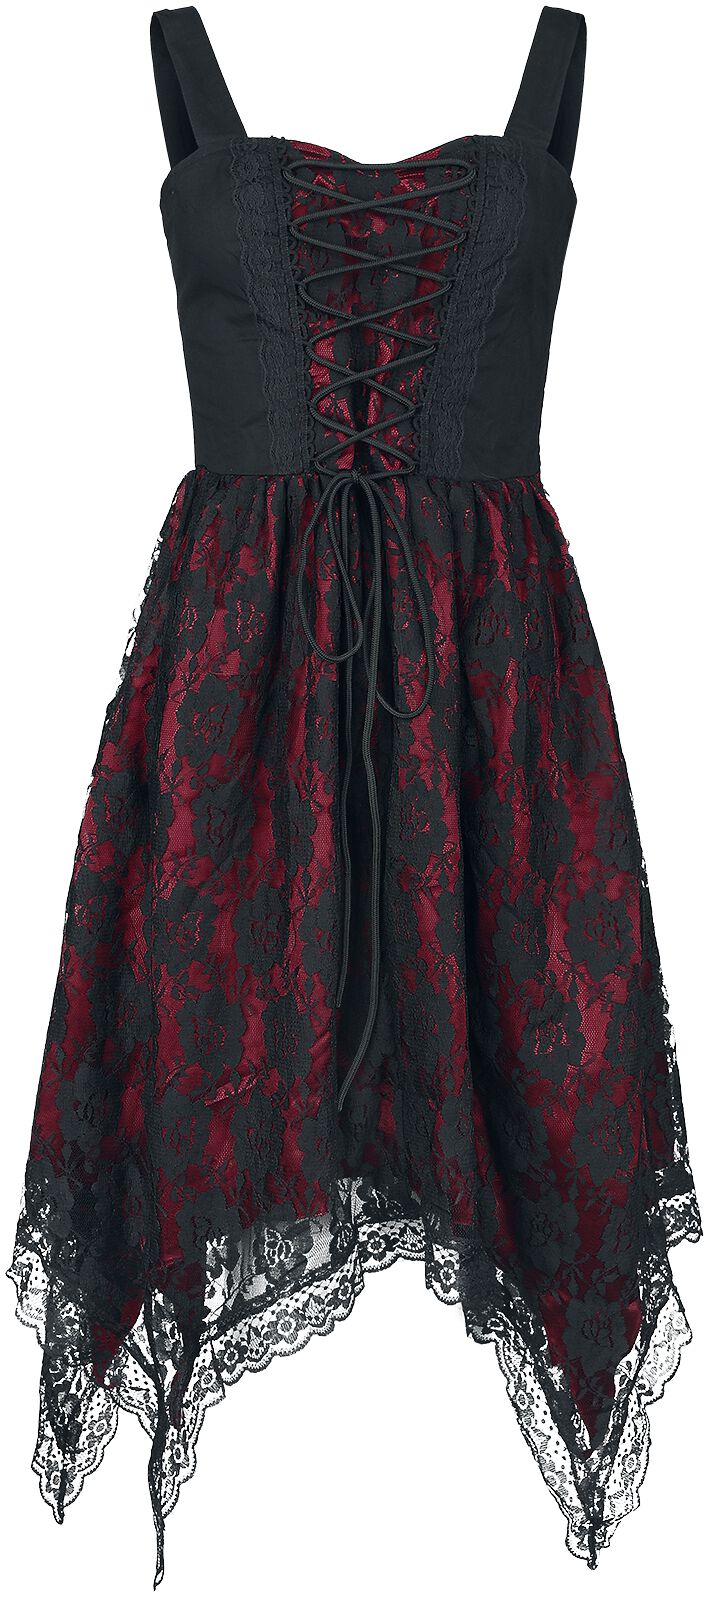 Gothicana by EMP Kleid mit Spitze und Zipfelsaum Kurzes Kleid schwarz rot in M